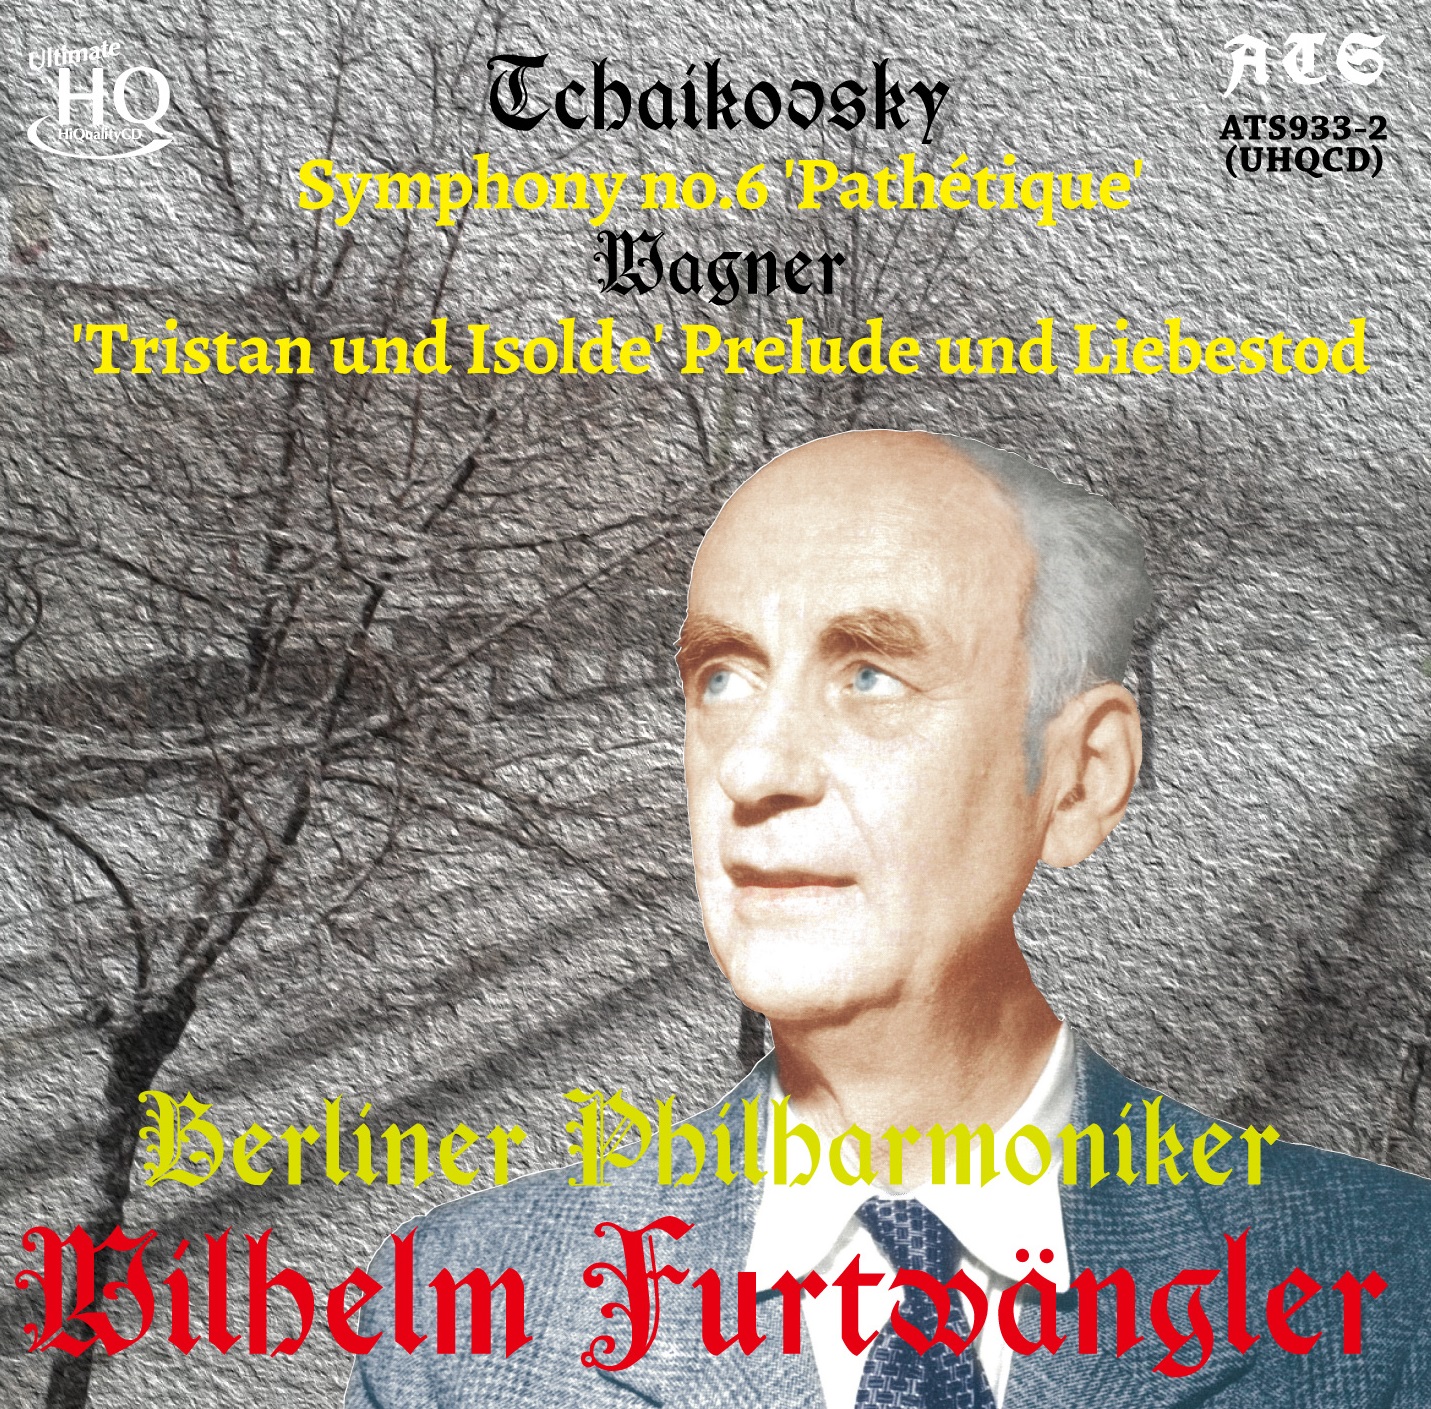 チャイコフスキー／交響曲第６番「悲愴」 フルトヴェングラー(復刻盤)